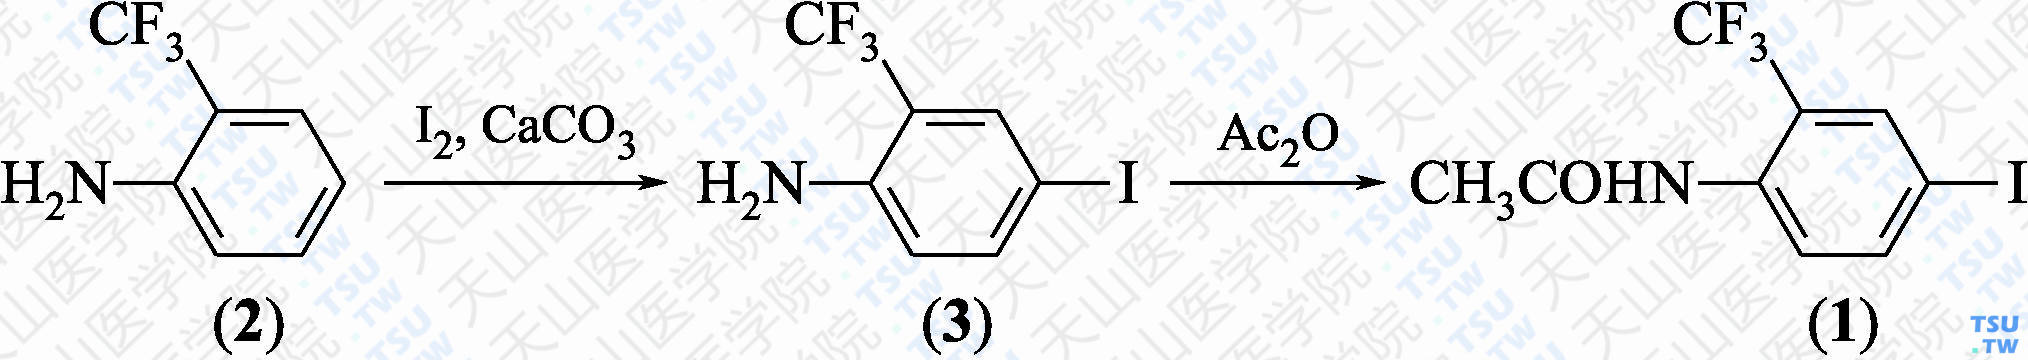 4-碘-2-三氟甲基-乙酰苯胺（分子式：C<sub>9</sub>H<sub>7</sub>F<sub>3</sub>INO）的合成方法路线及其结构式